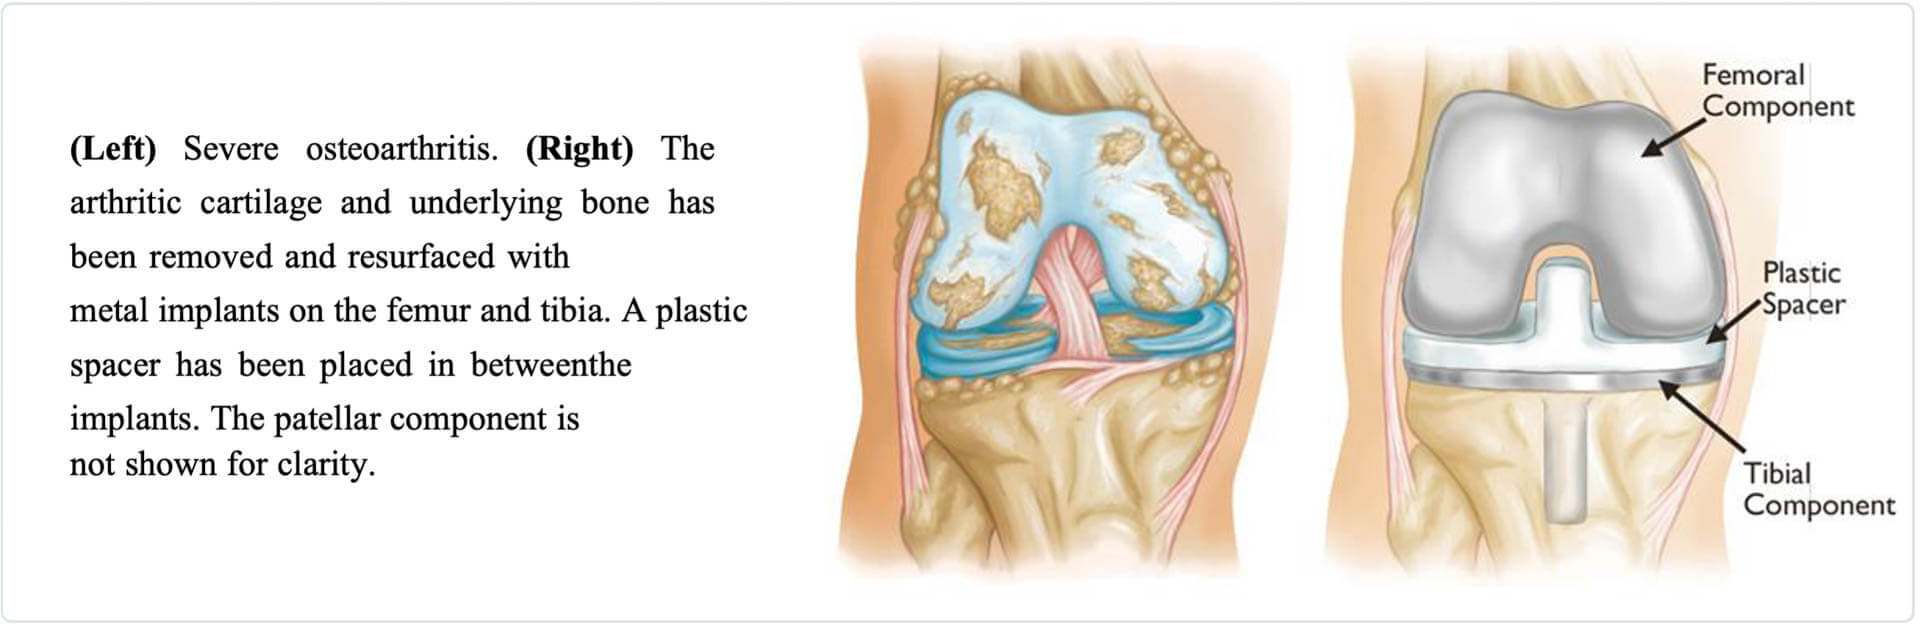 Severe Osteoarthritis anatomy